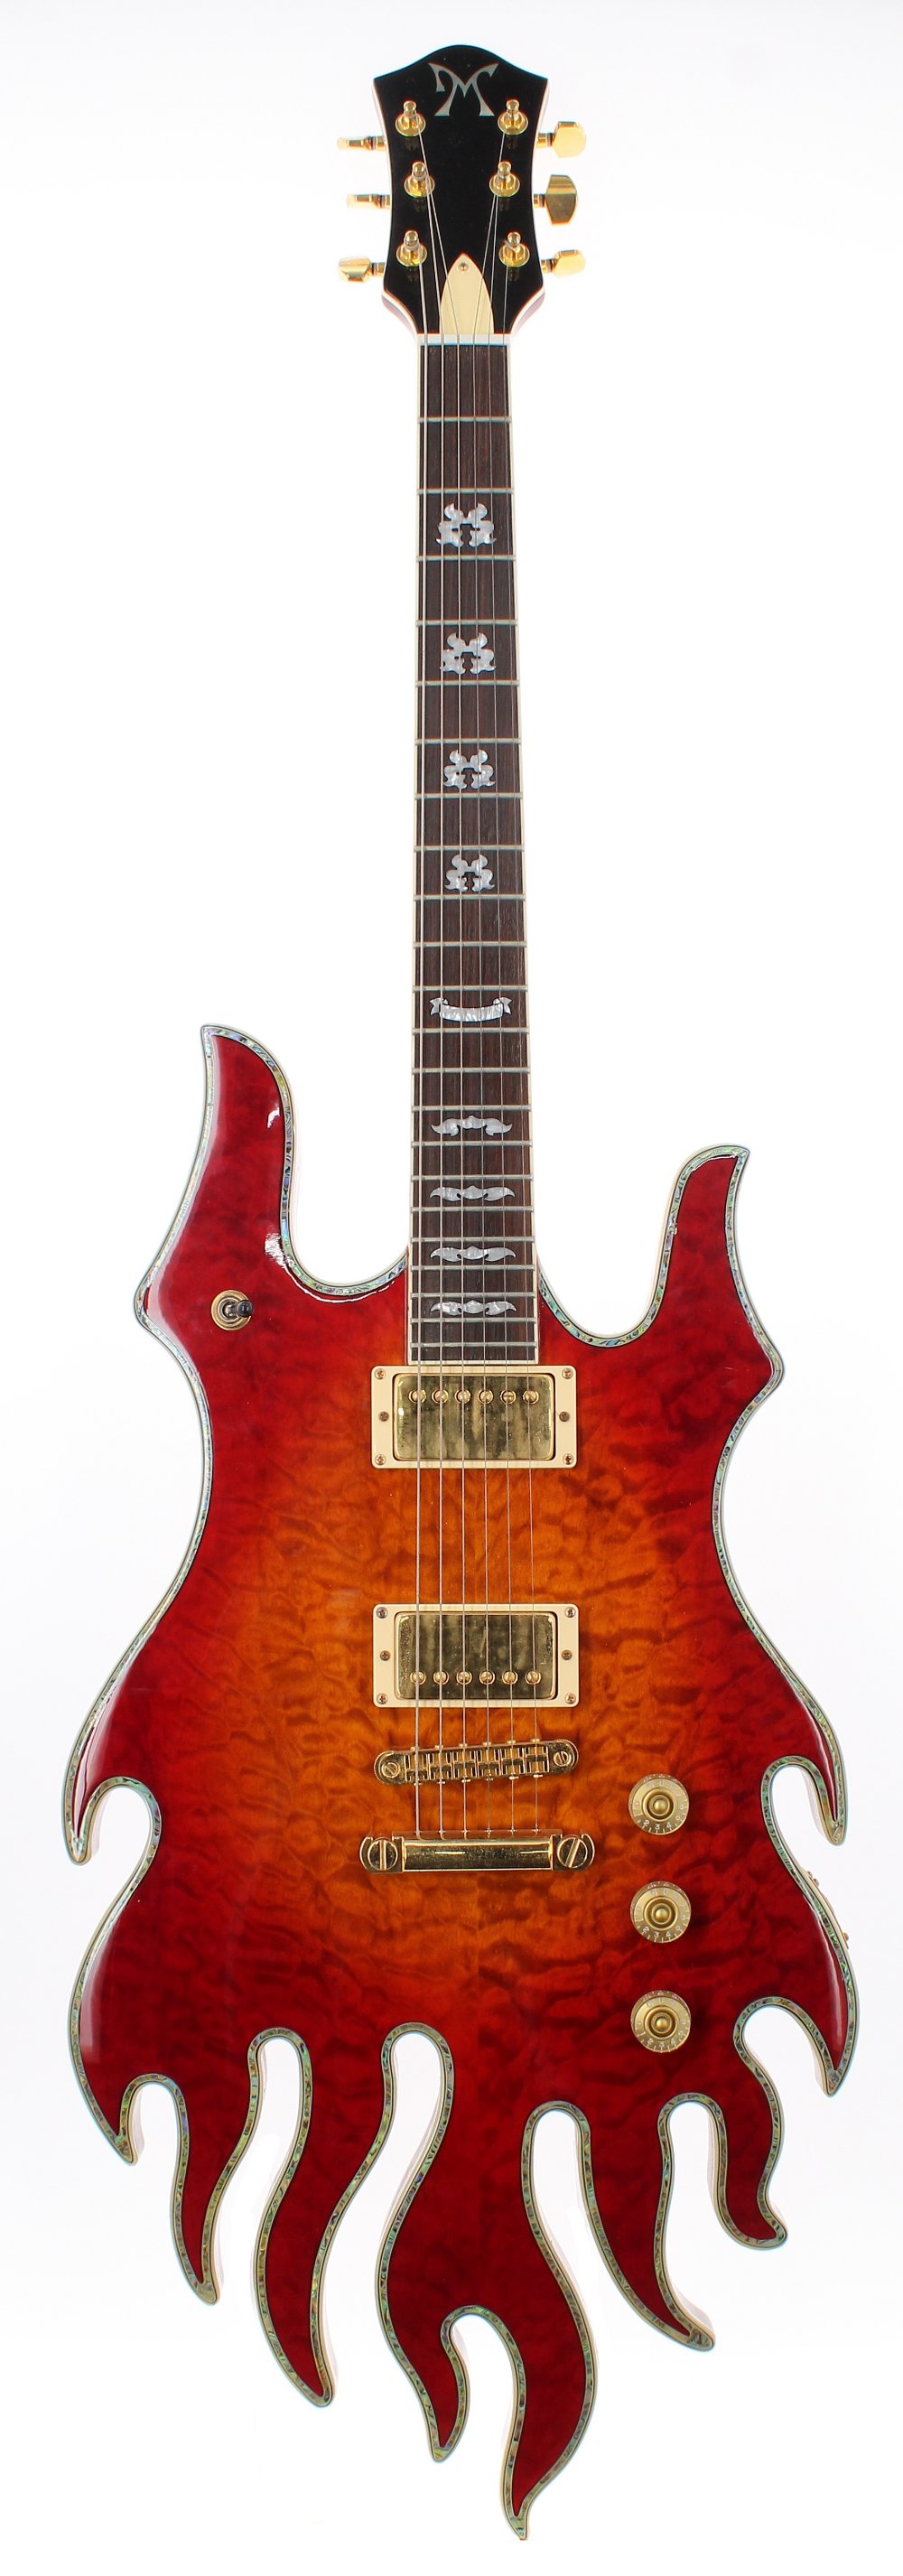 Minarik Inferno electric guitar, ser. no. Wxx76; Finish: quilted cherry sunburst; Fretboard: